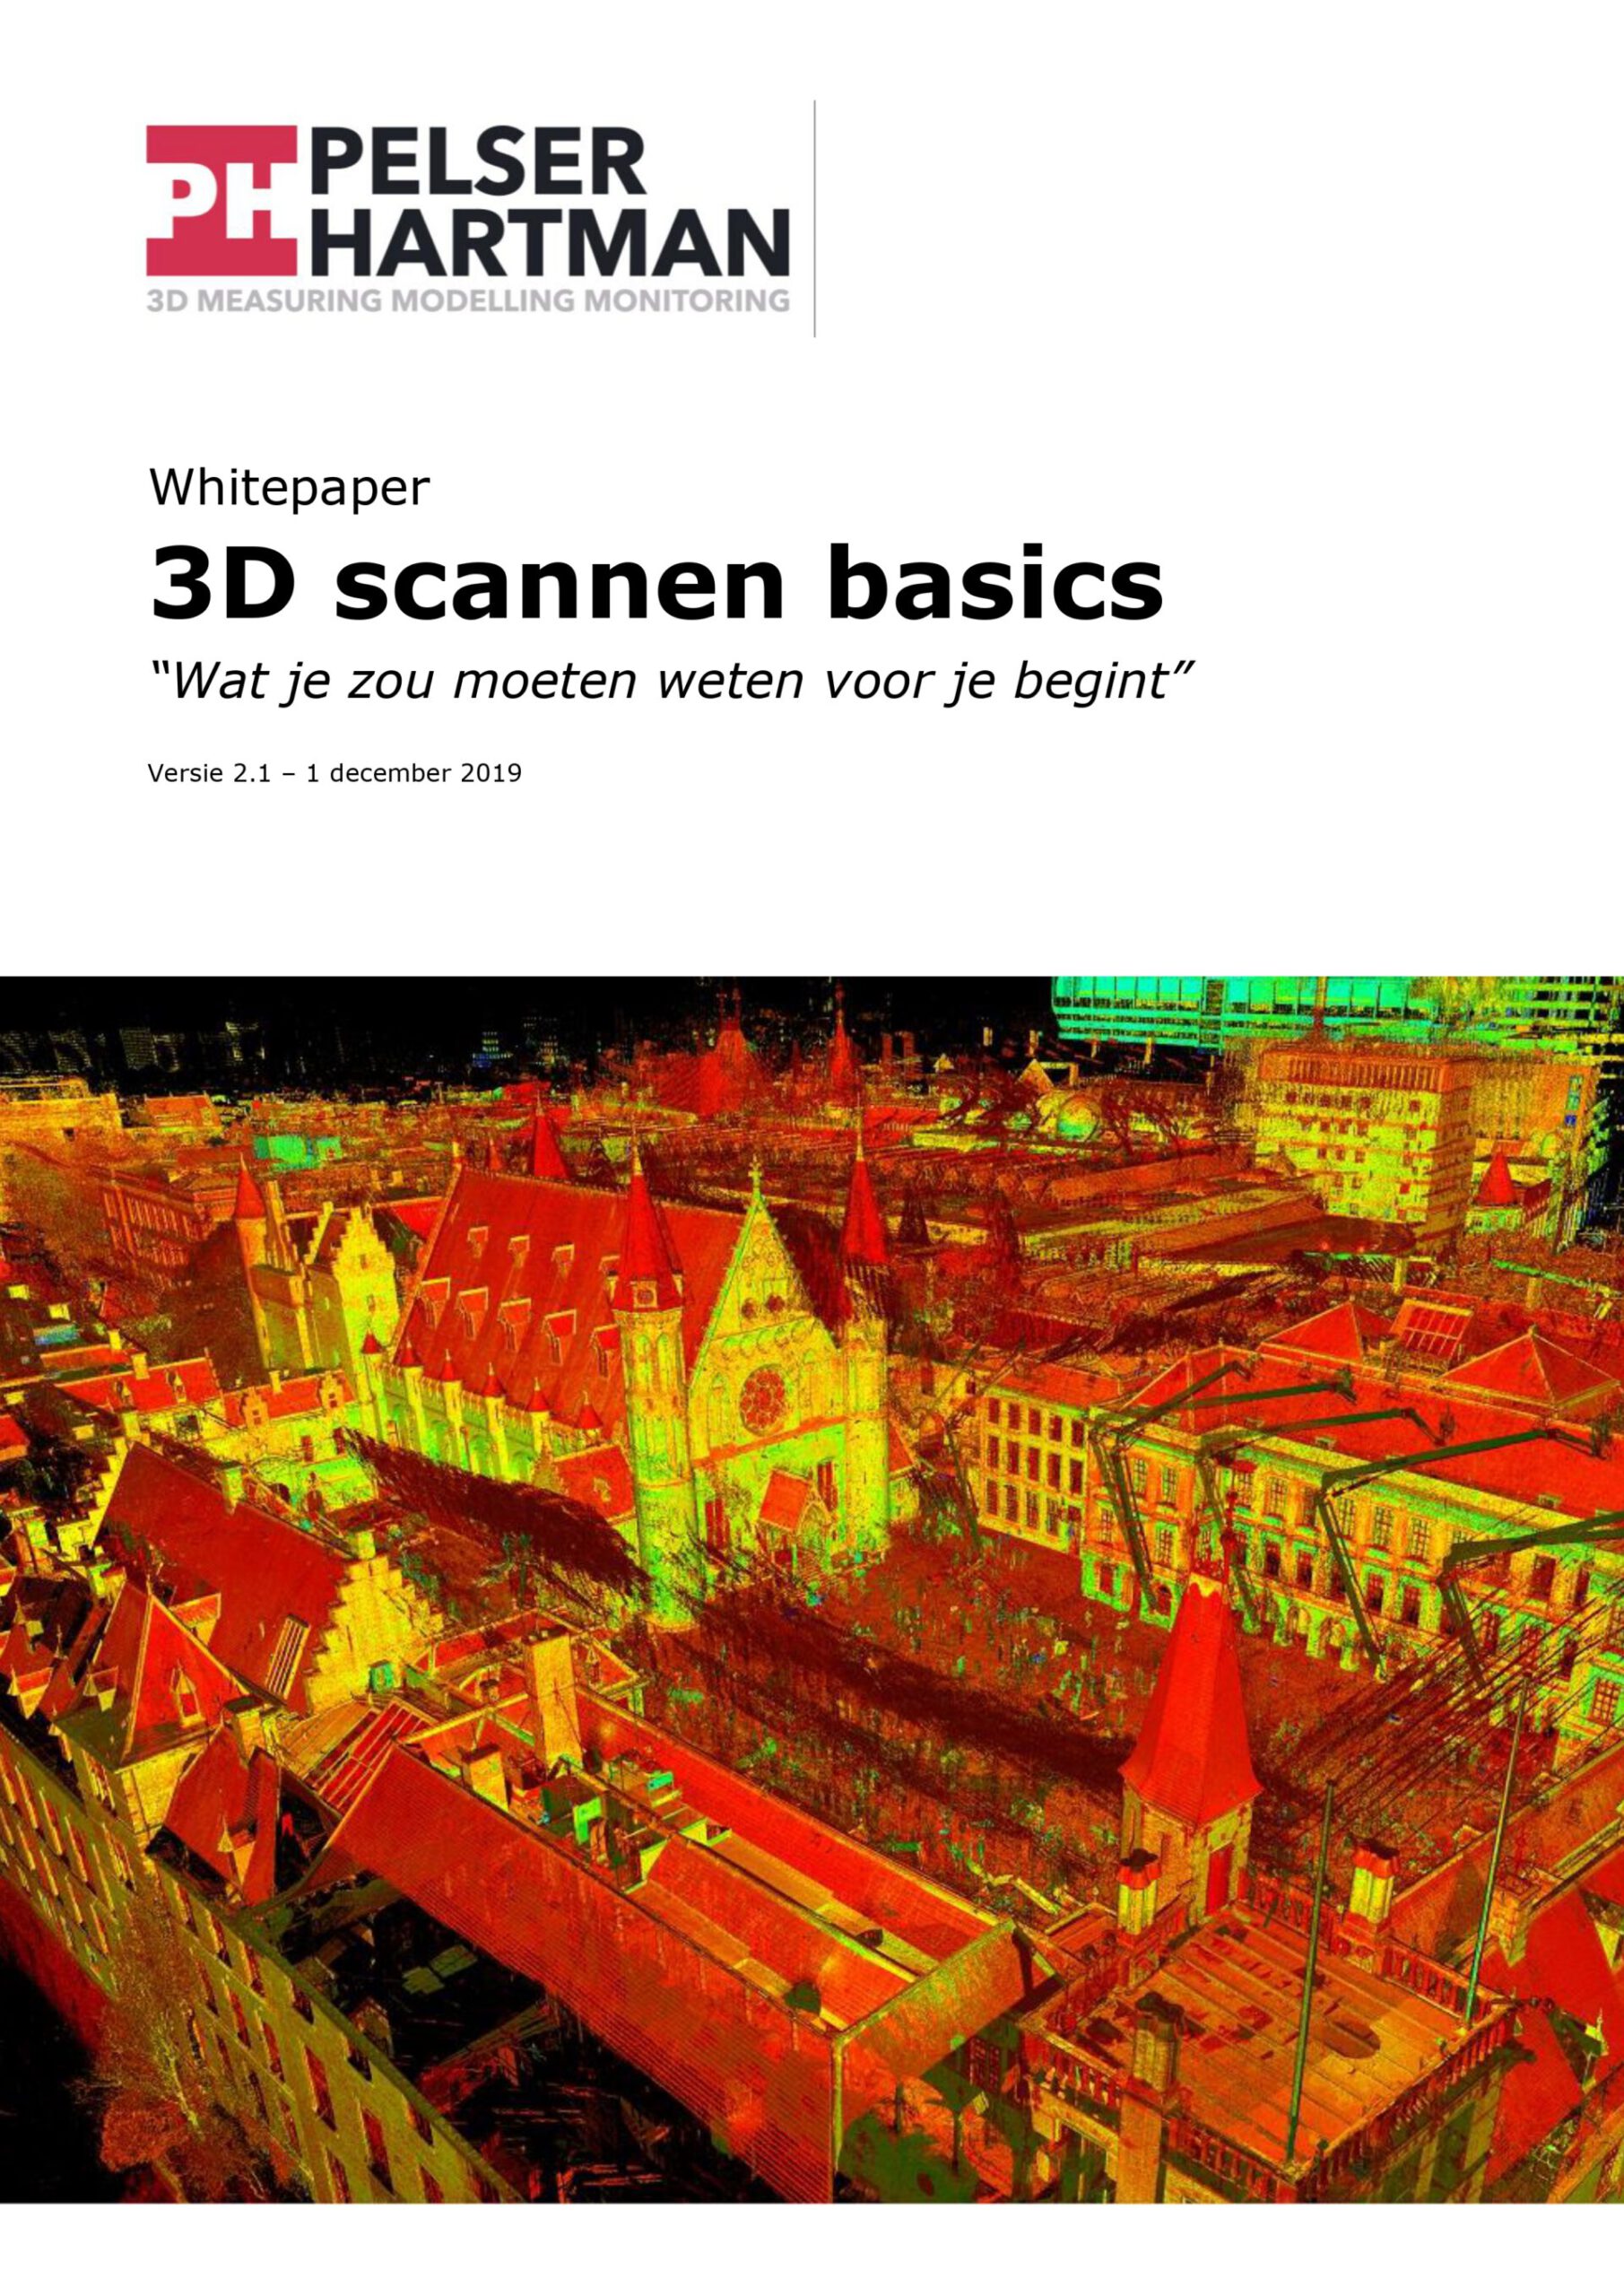 Whitepaper 3D scannen basics PelserHartman